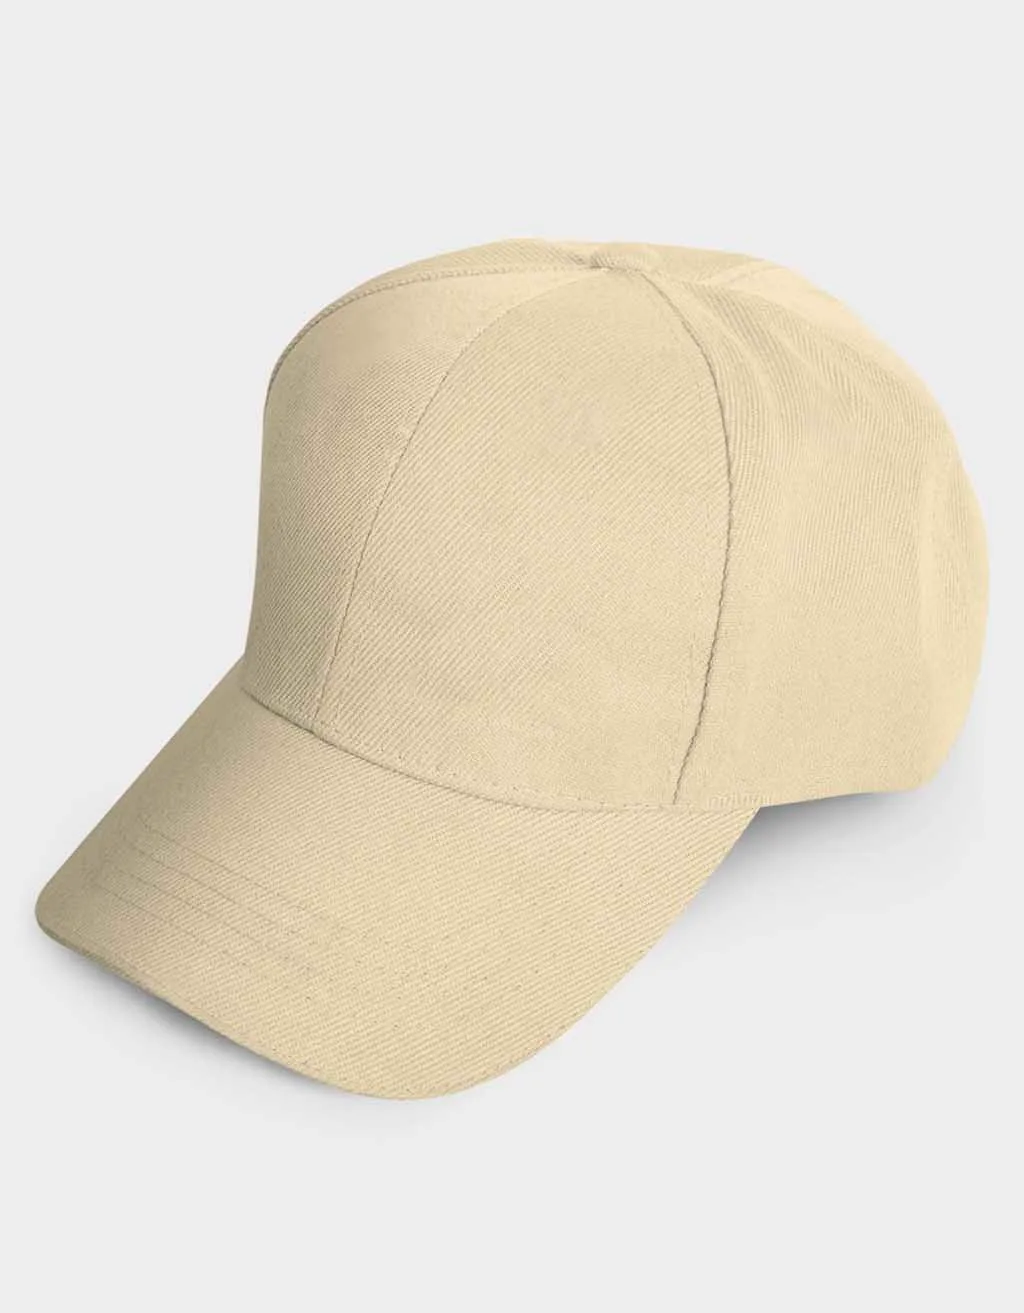 buy plain beige cap for men online india